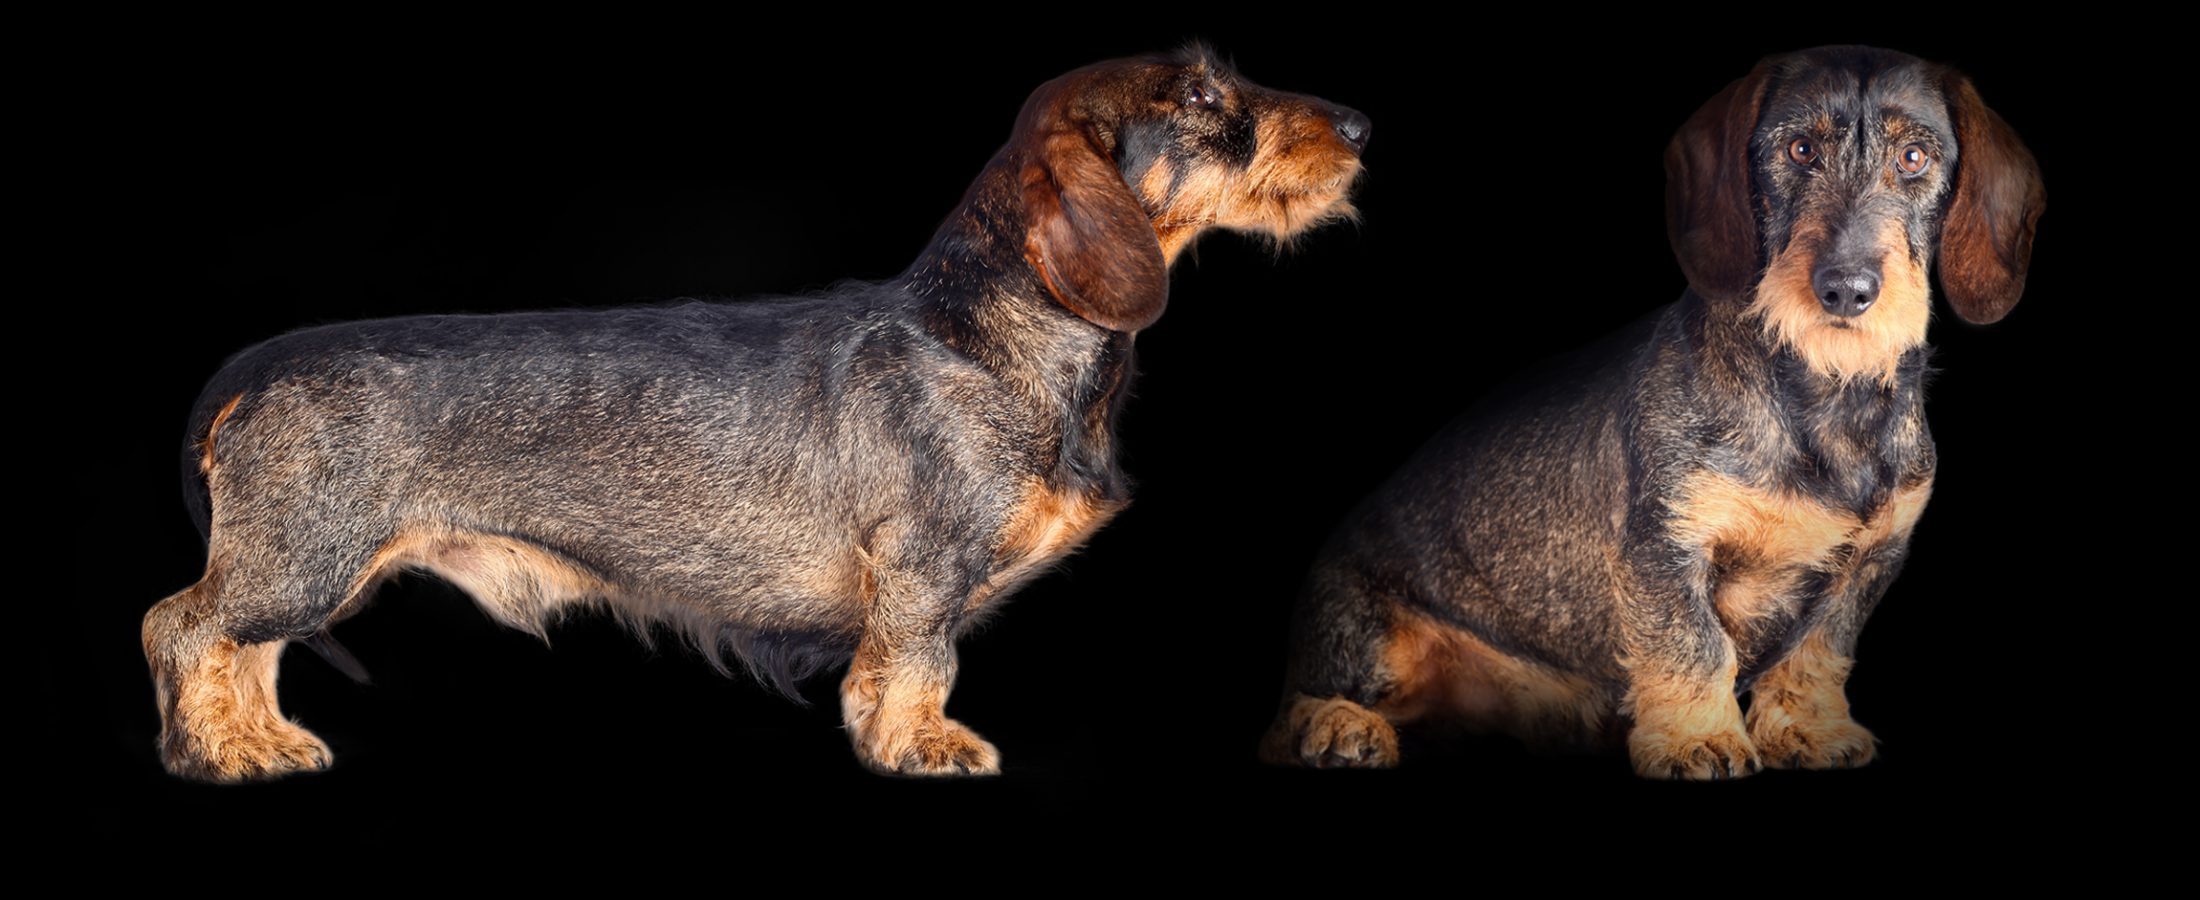 photo de chien teckel de David Strano photographe animalier